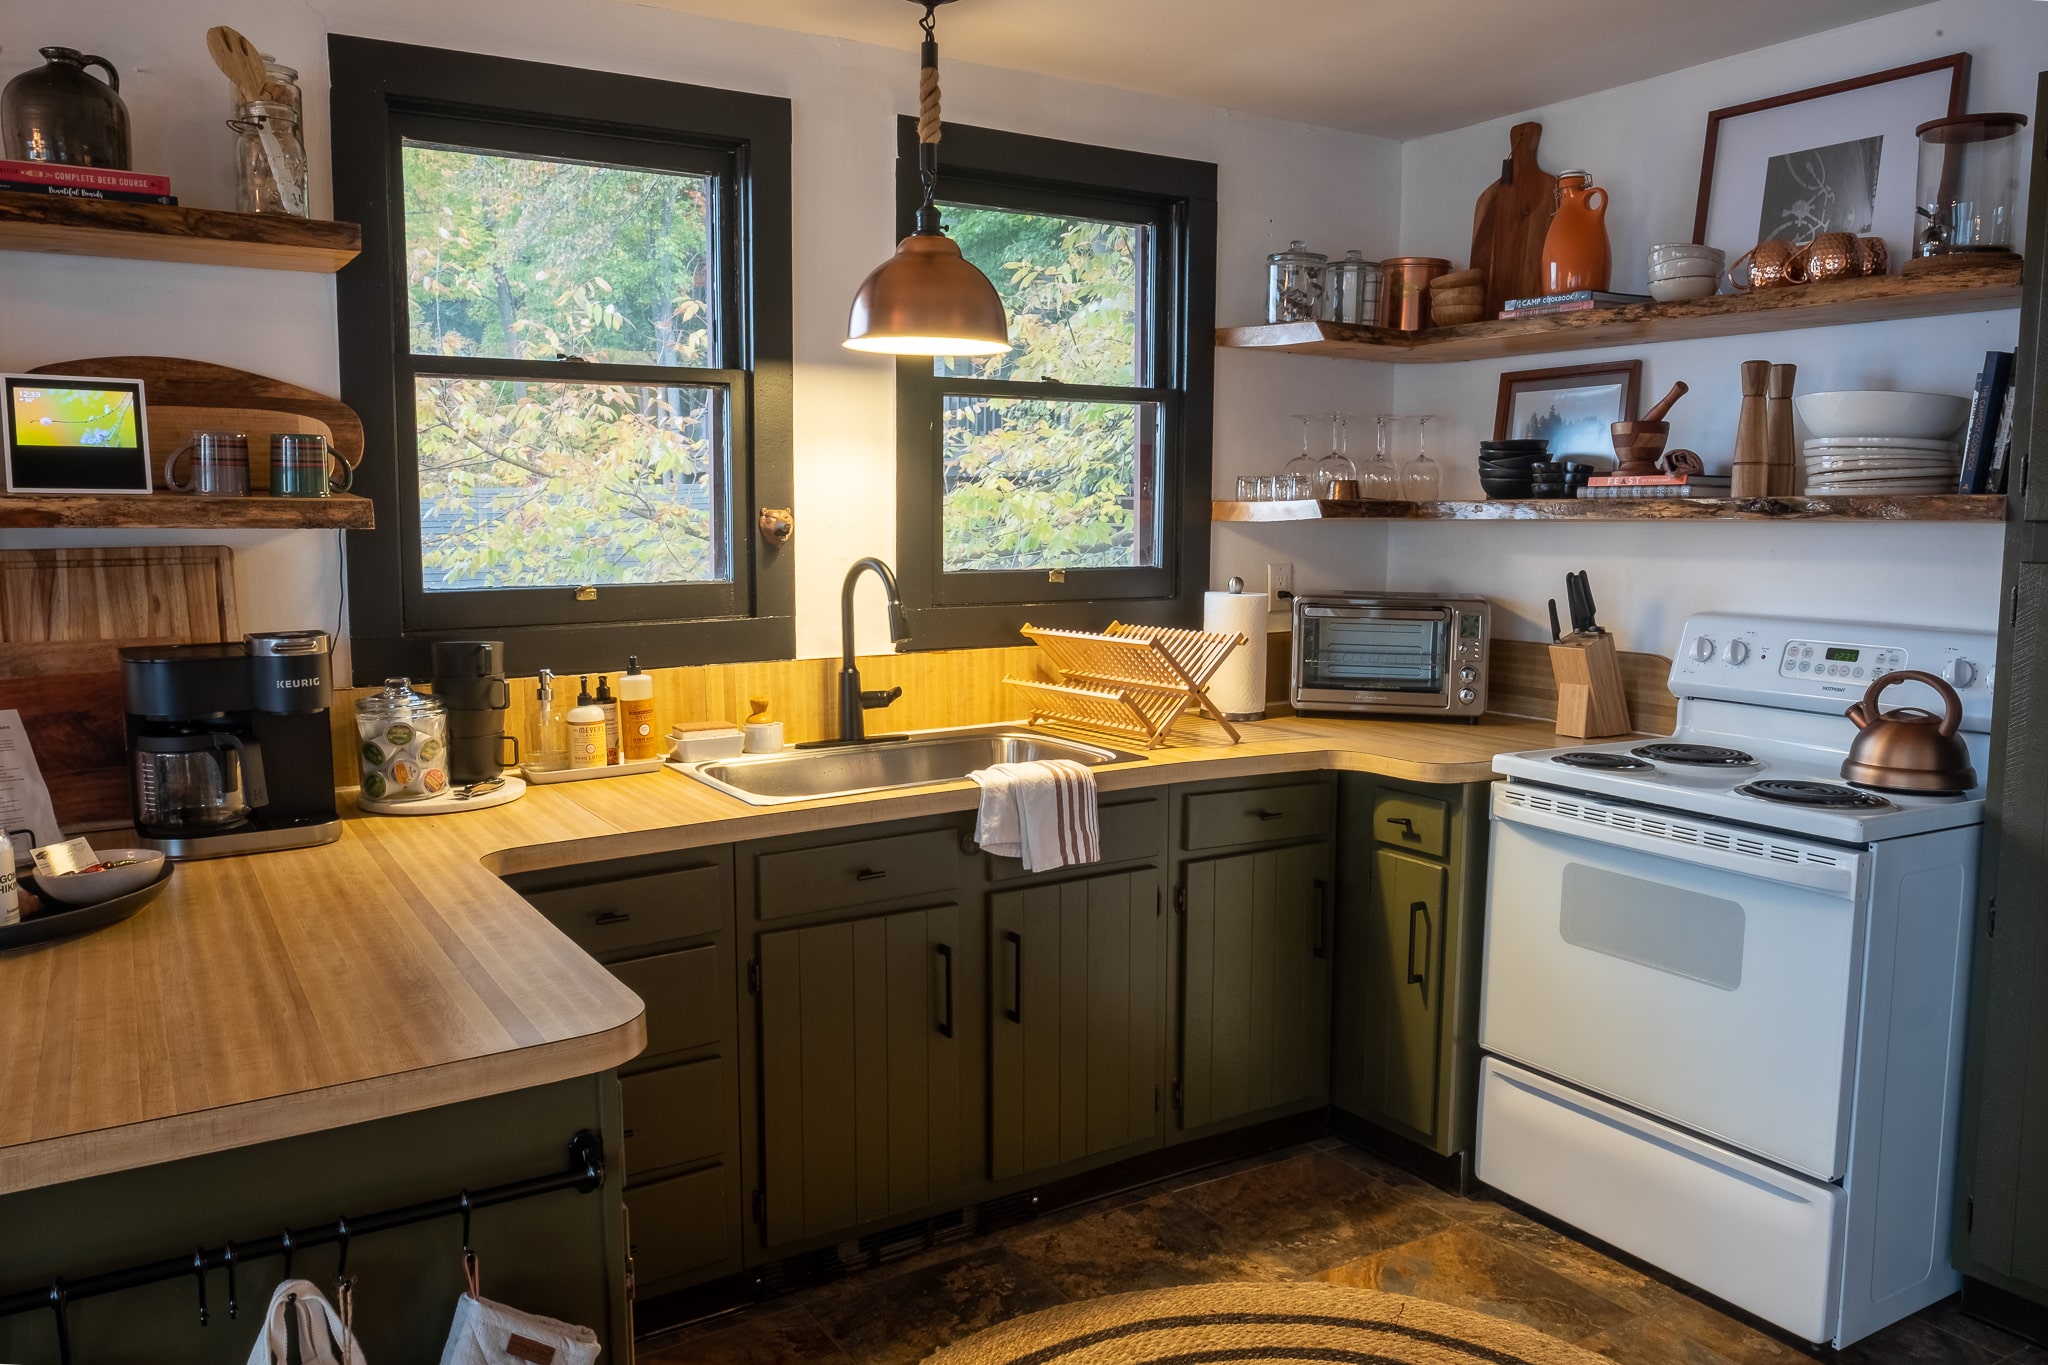 Rustic modern kitchen cabin interior